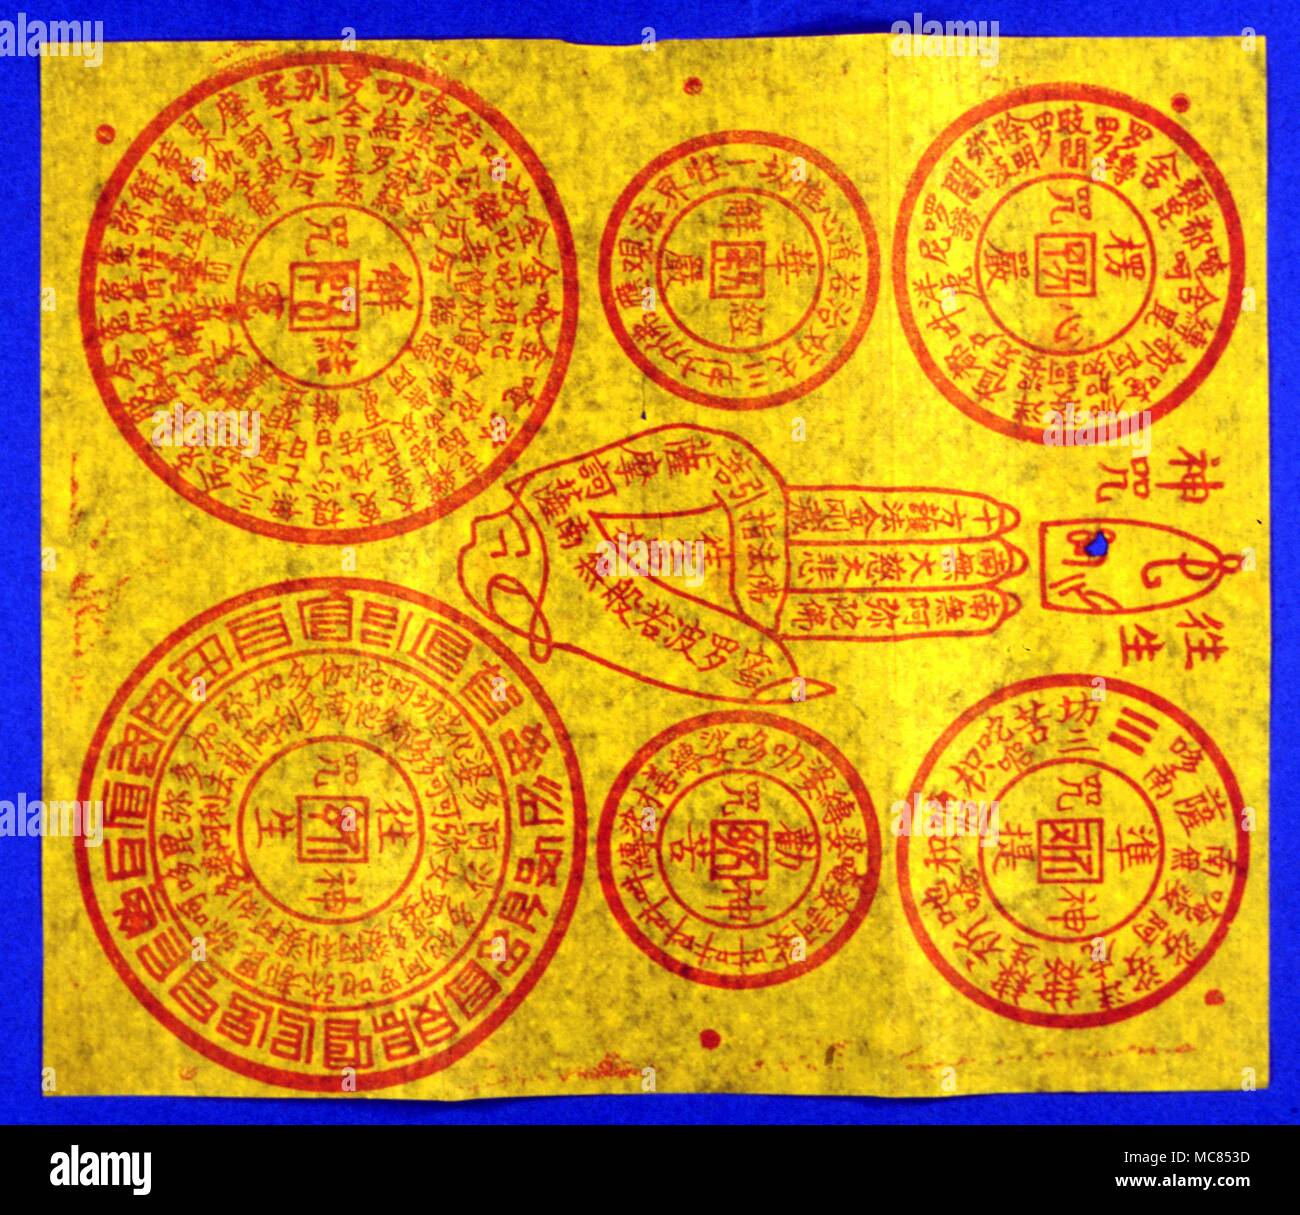 Chinesische Mythologie gelbes Papier Charme von chinesischen Taoisten und Buddhisten verwendet. Diese Reize werden in der Regel verbrannt, den Verkohlten in Wasser, und betrunken. Stockfoto